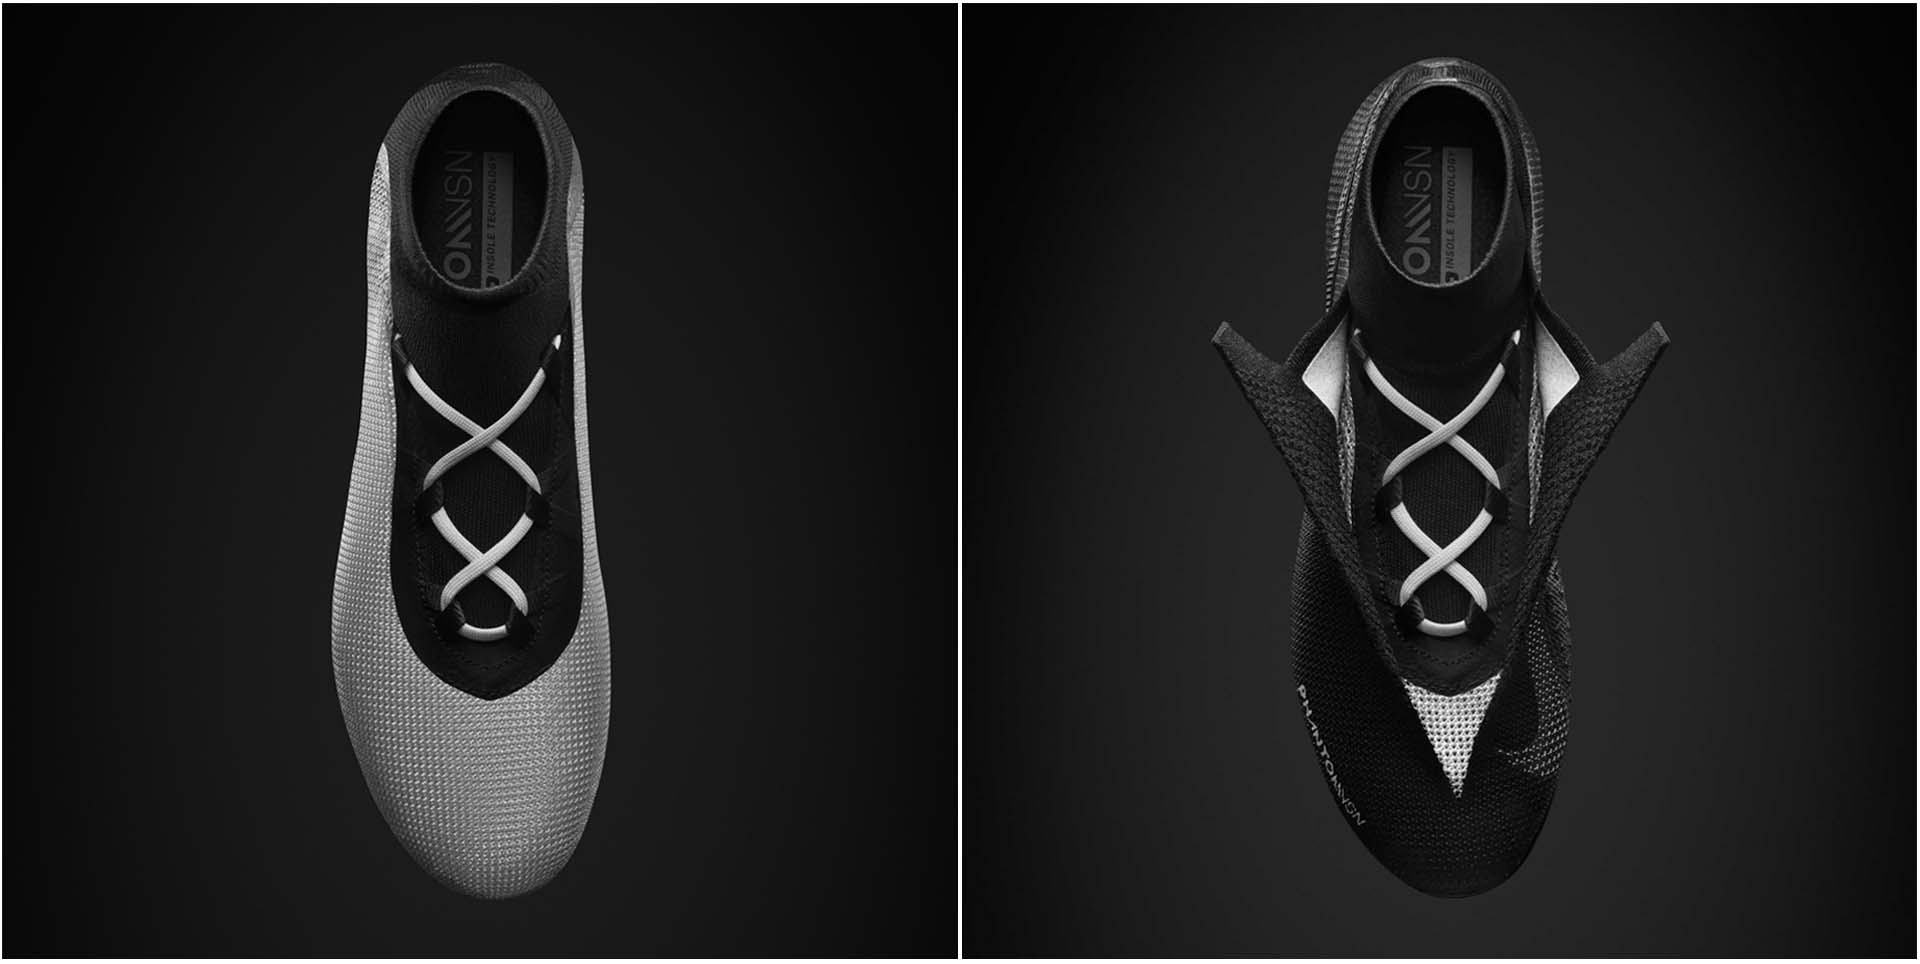 Công nghệ Quadfit là tên gọi của lớp lưới đặc biệt được ẩn bên trong giày với những tính chất đặc biệt